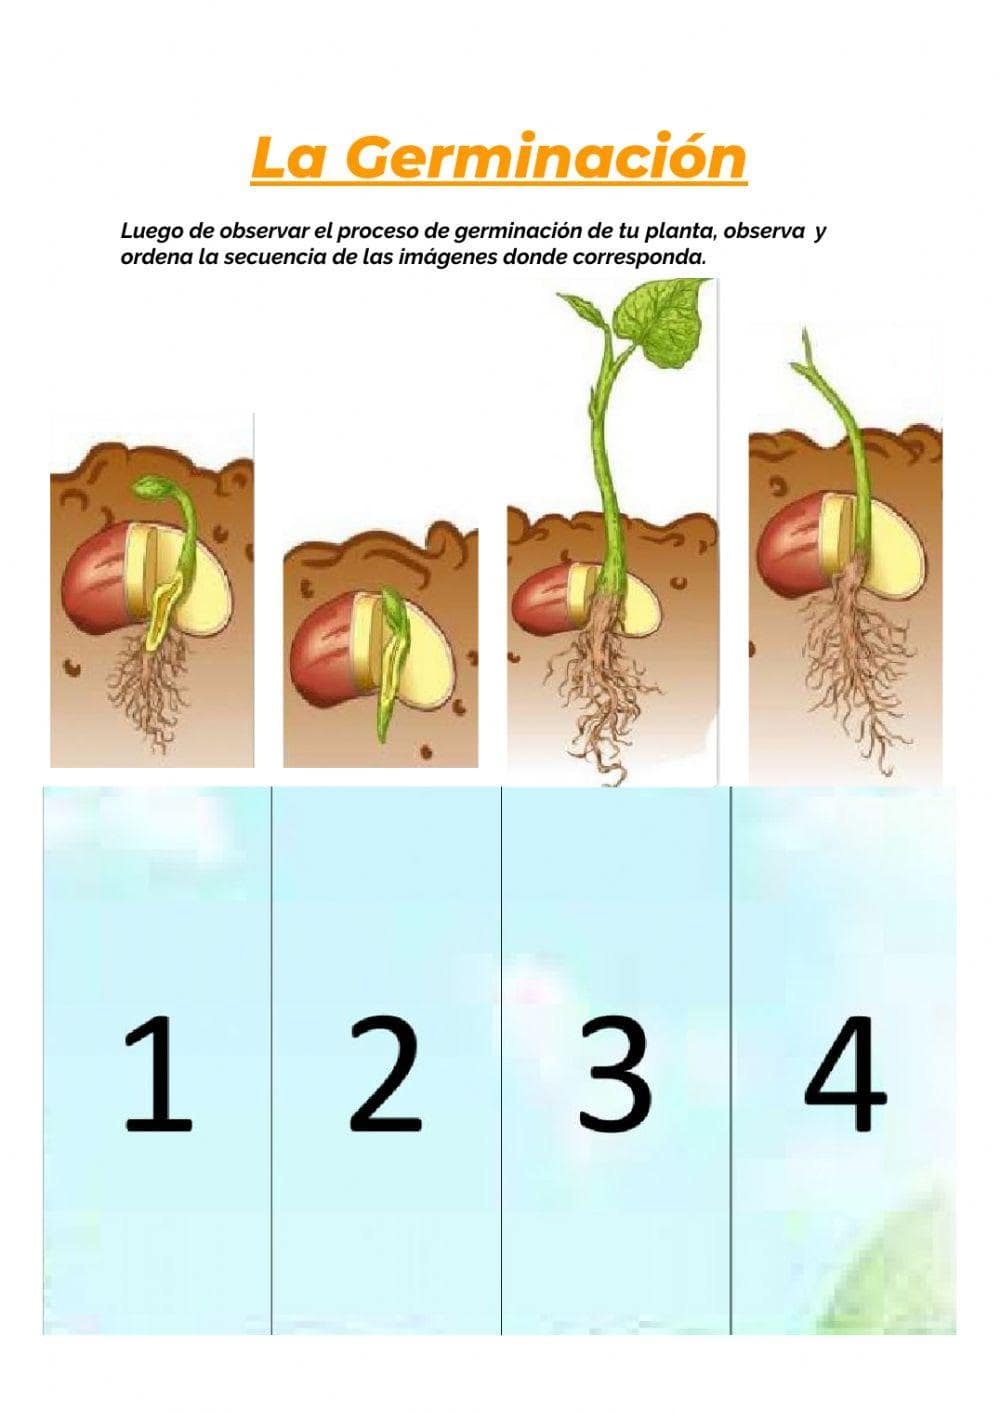 Ficha de germinación de una planta: Guía completa para el cultivo exitoso